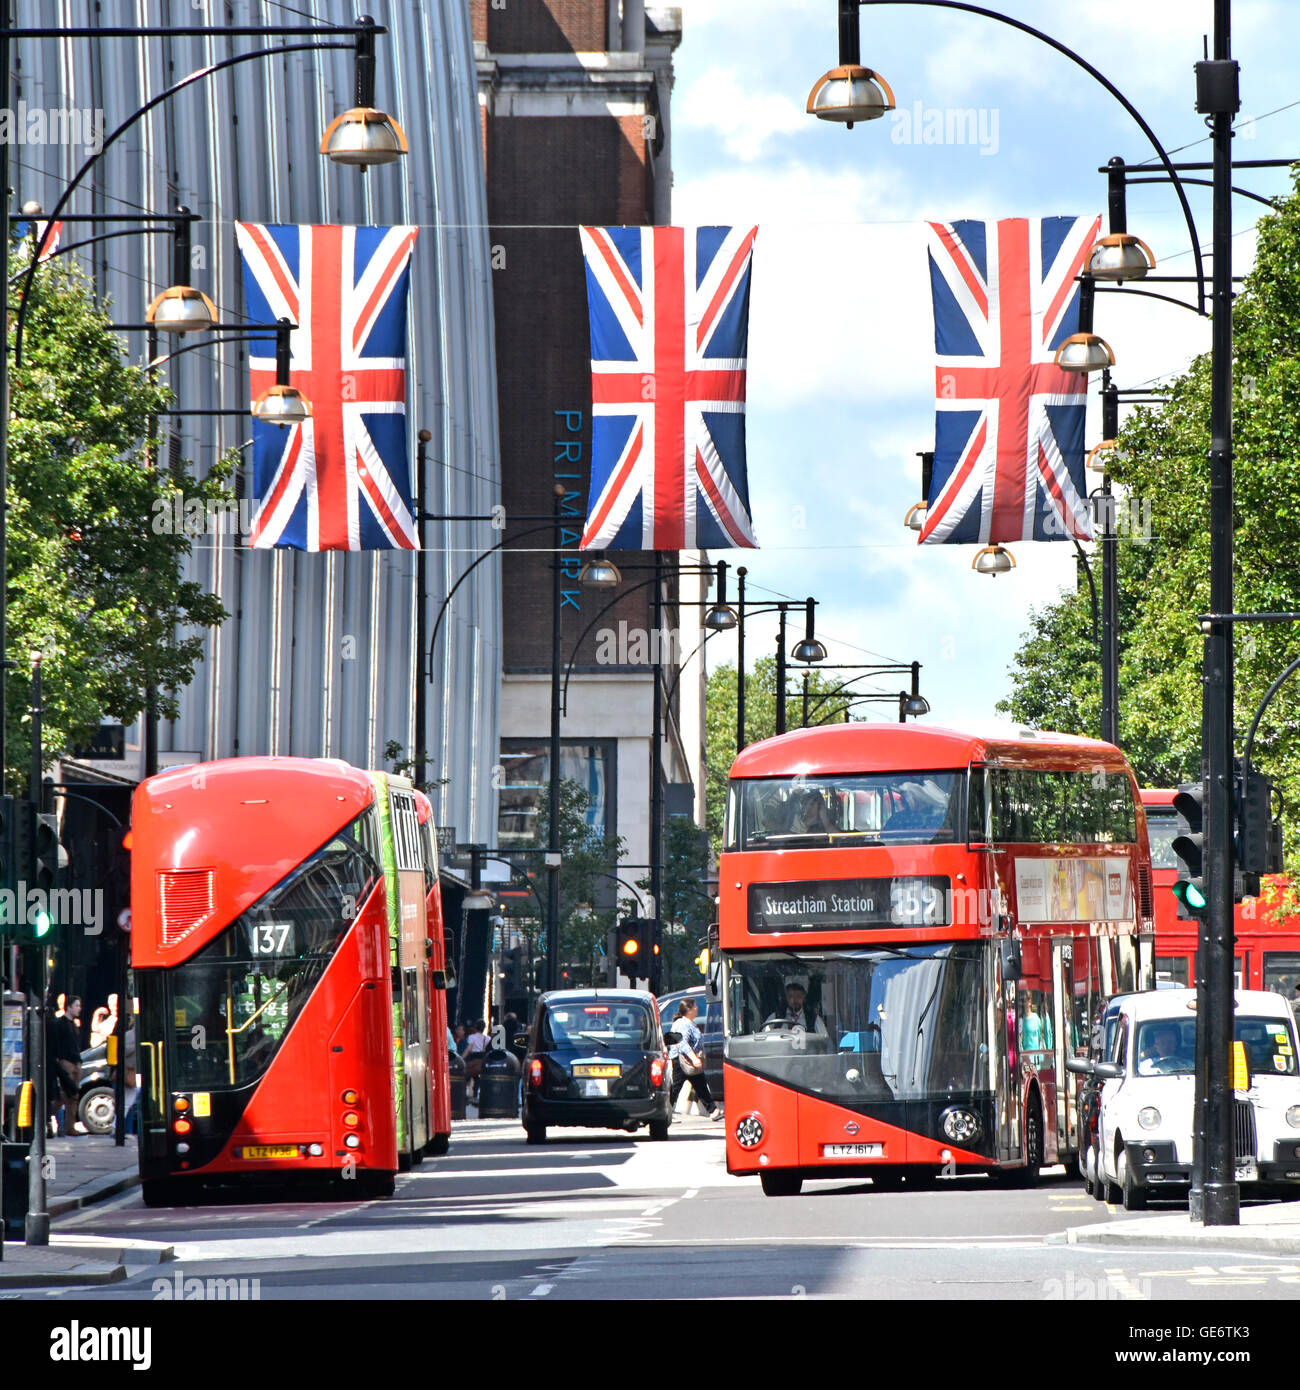 Oxford Street West End de Londres Angleterre Royaume-uni new red double decker bus Routemaster ci-dessous Union Jack drapeaux dans cette rue commerçante de détail Banque D'Images